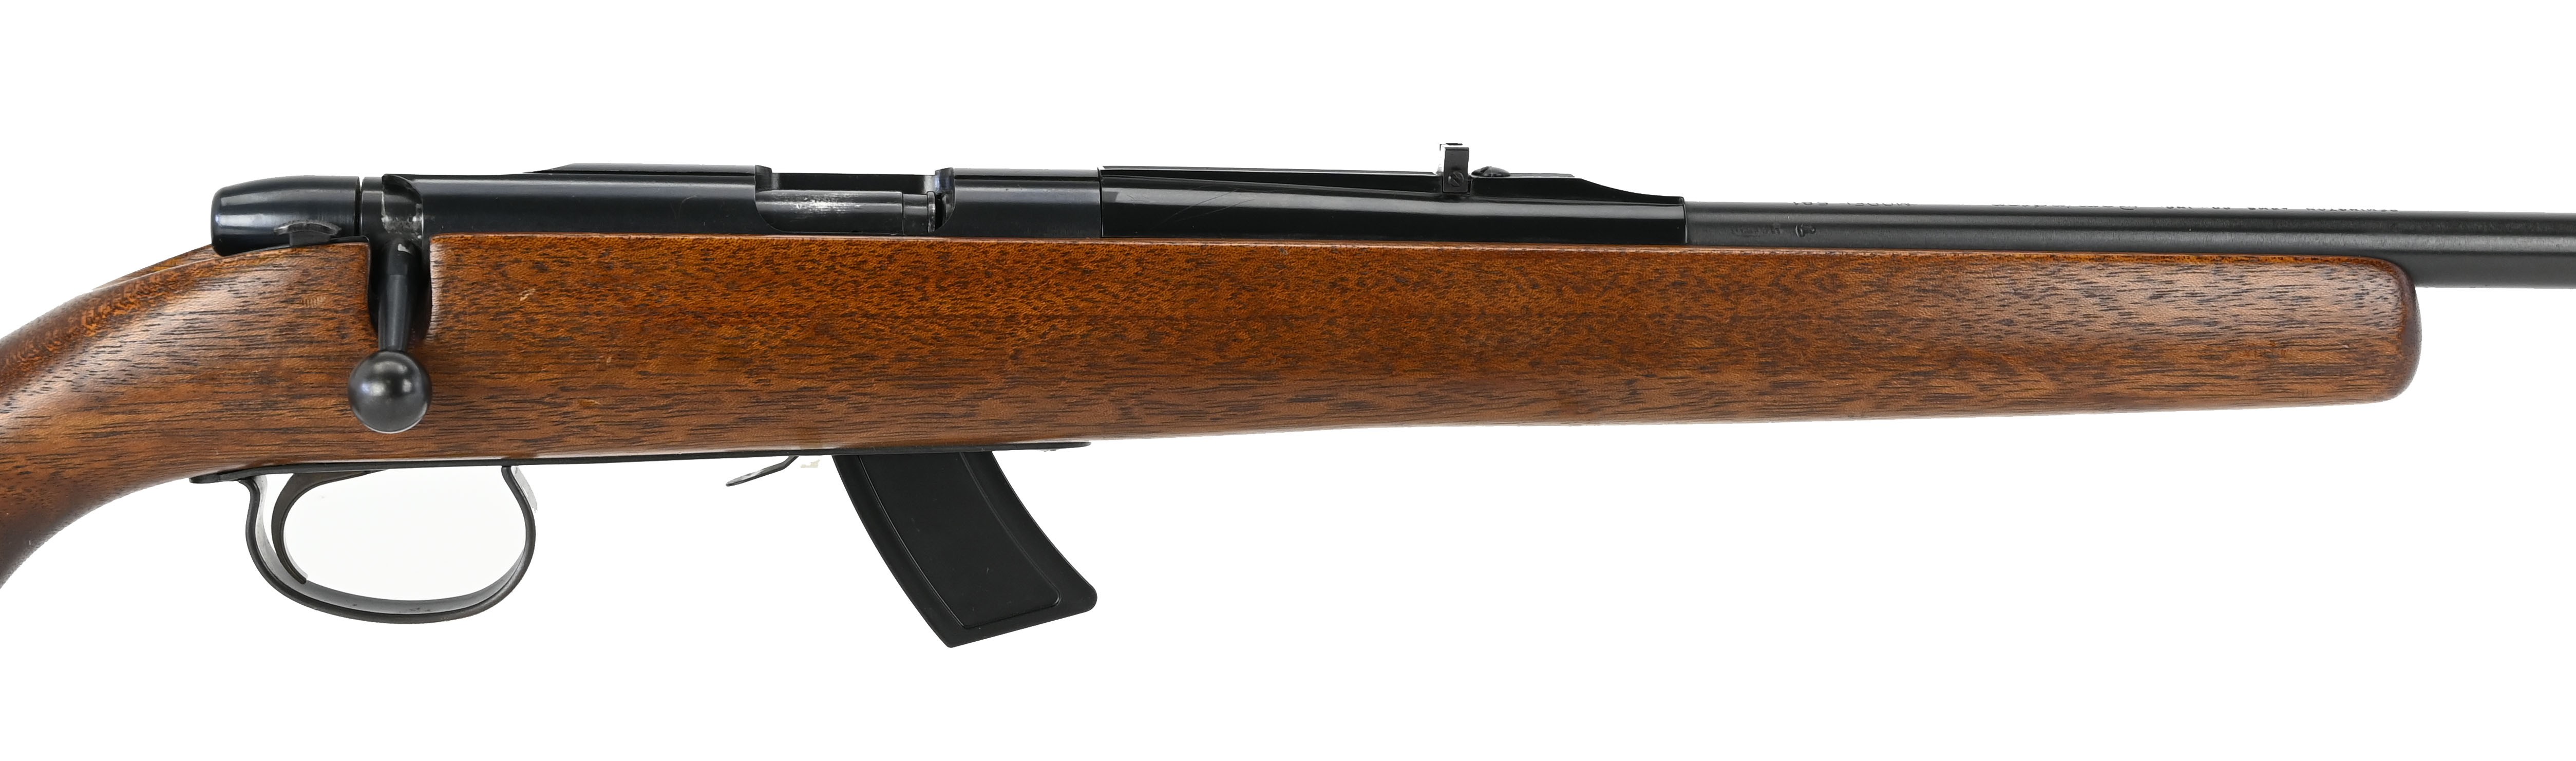 remington-581-22-s-l-lr-caliber-rifle-for-sale